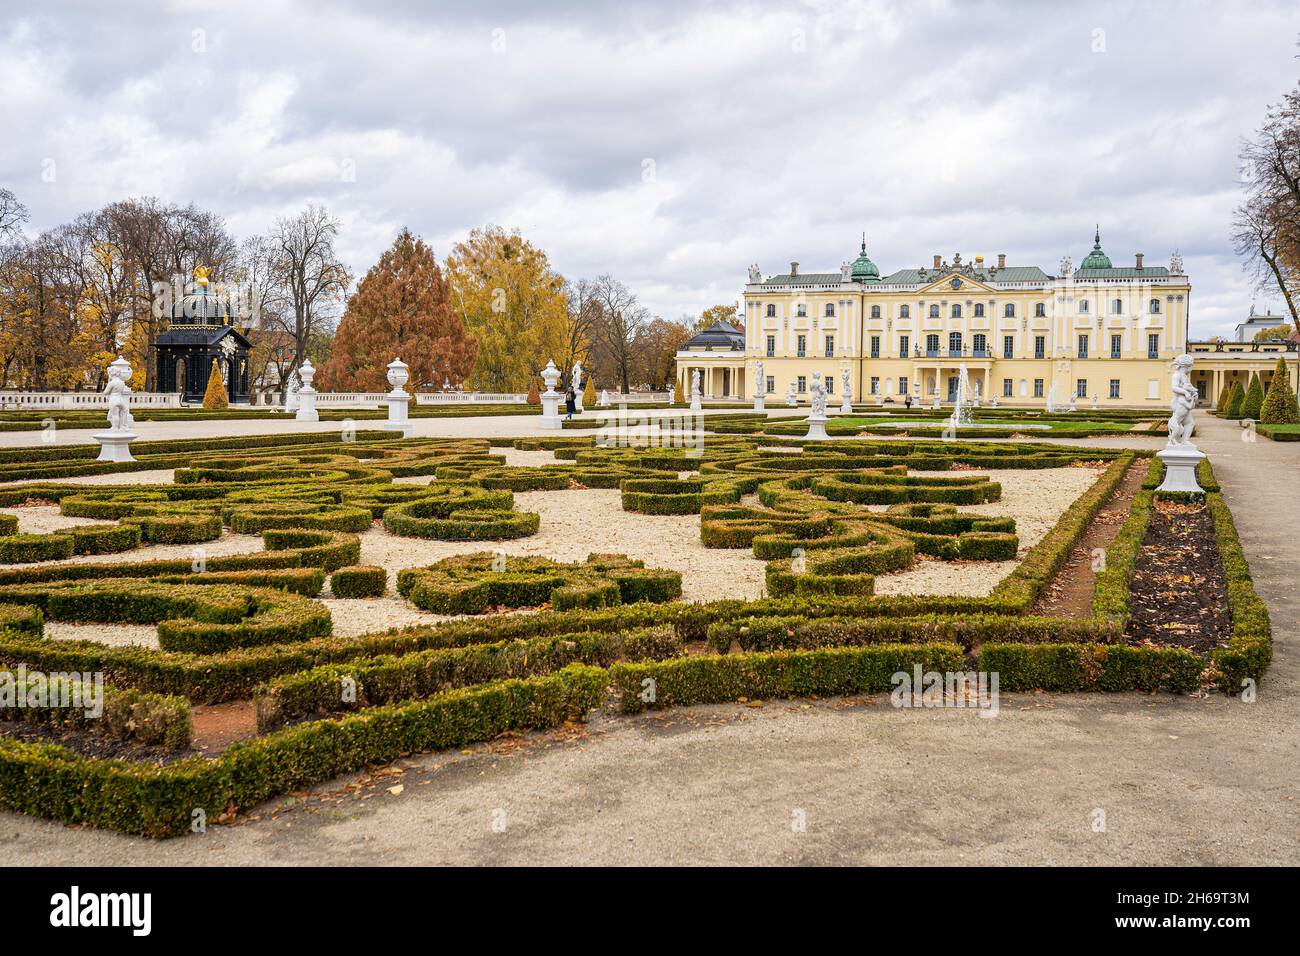 Branicki Palace à Bialystok, Podlasie, Pologne.Palac Branickich et Université médicale beau jardin avec des sculptures. Banque D'Images